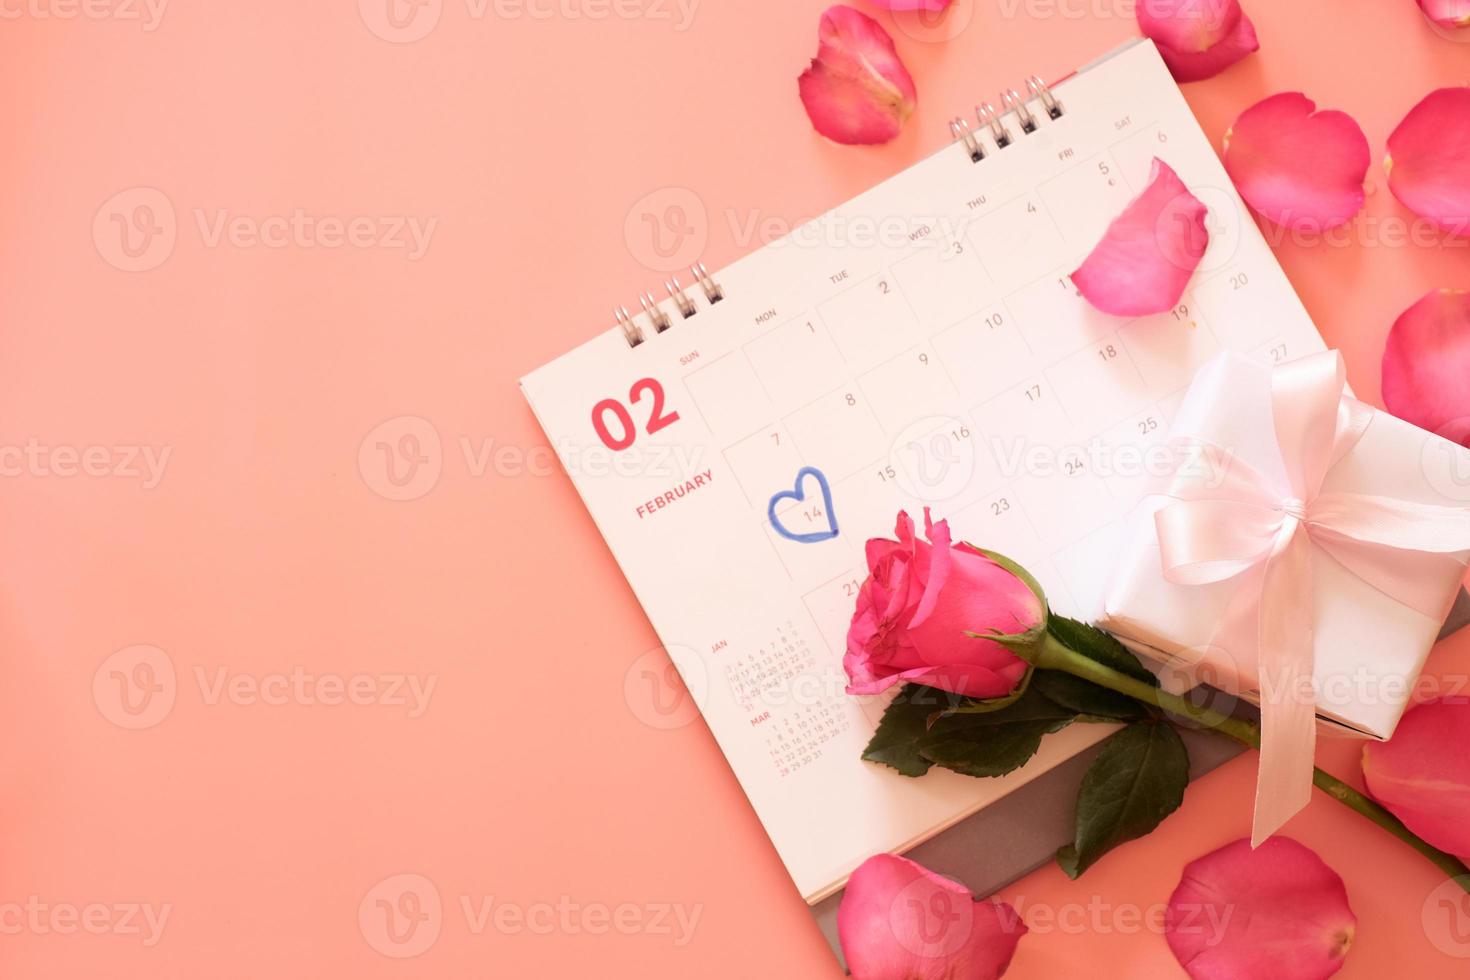 Rosa Rose und eine Geschenkbox im Kalender mit Rosenblättern isoliert auf rosa Hintergrund mit Copyspace für Text. Valentinstag-Konzept. planung terminplaner, veranstaltung, organisator valentinstag. foto